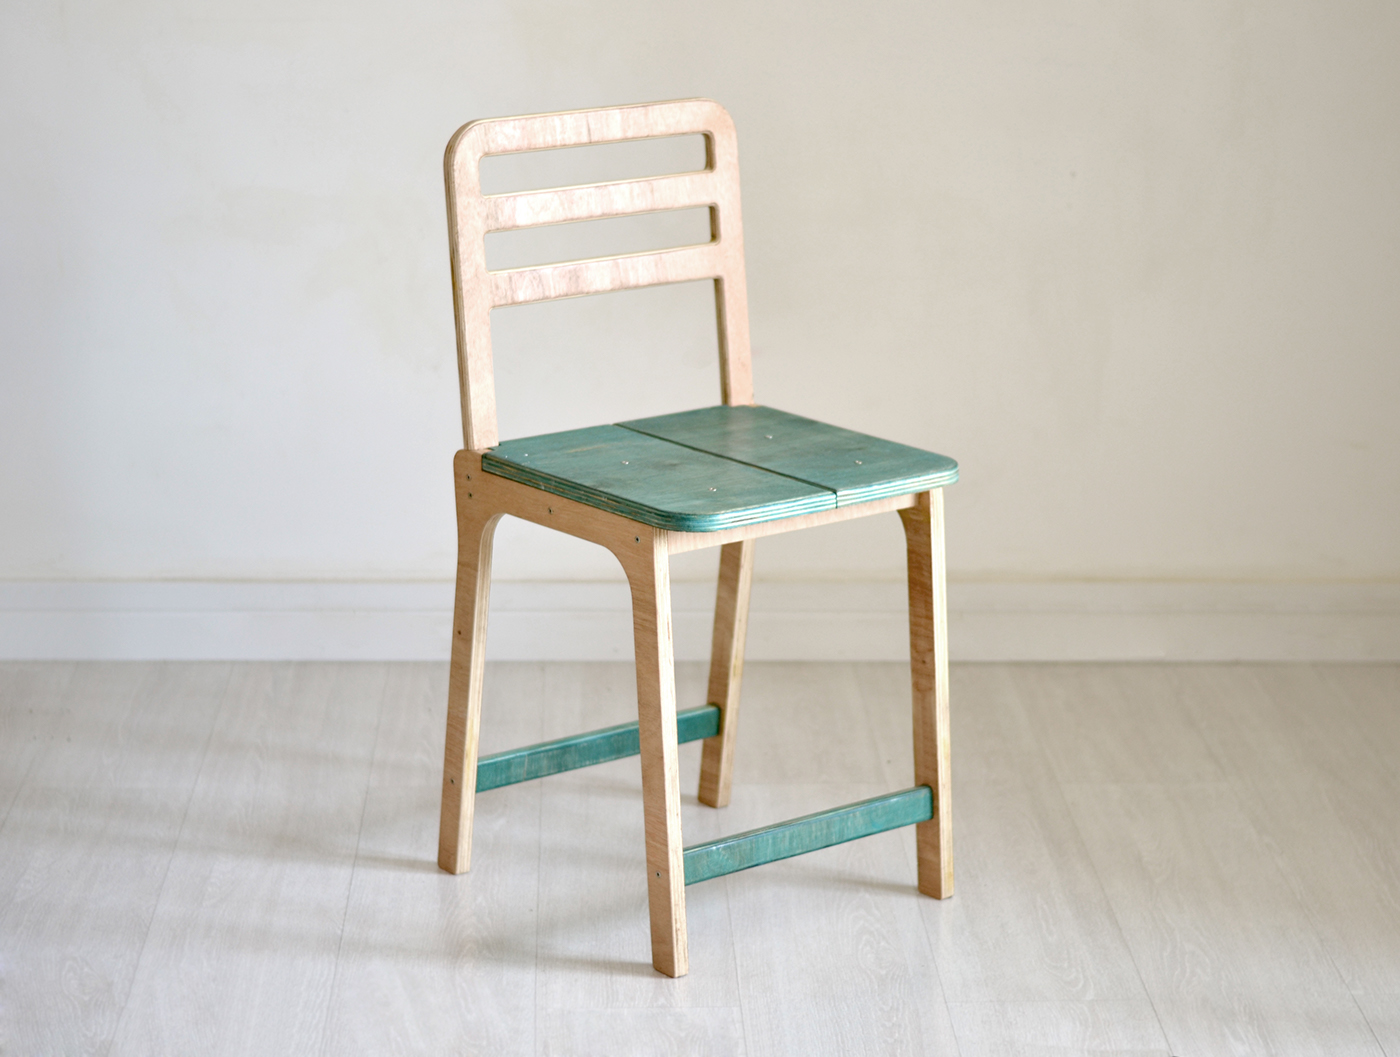 mobiliario furniture chair cadeira stool Banquinho plywood compensado cnc open source